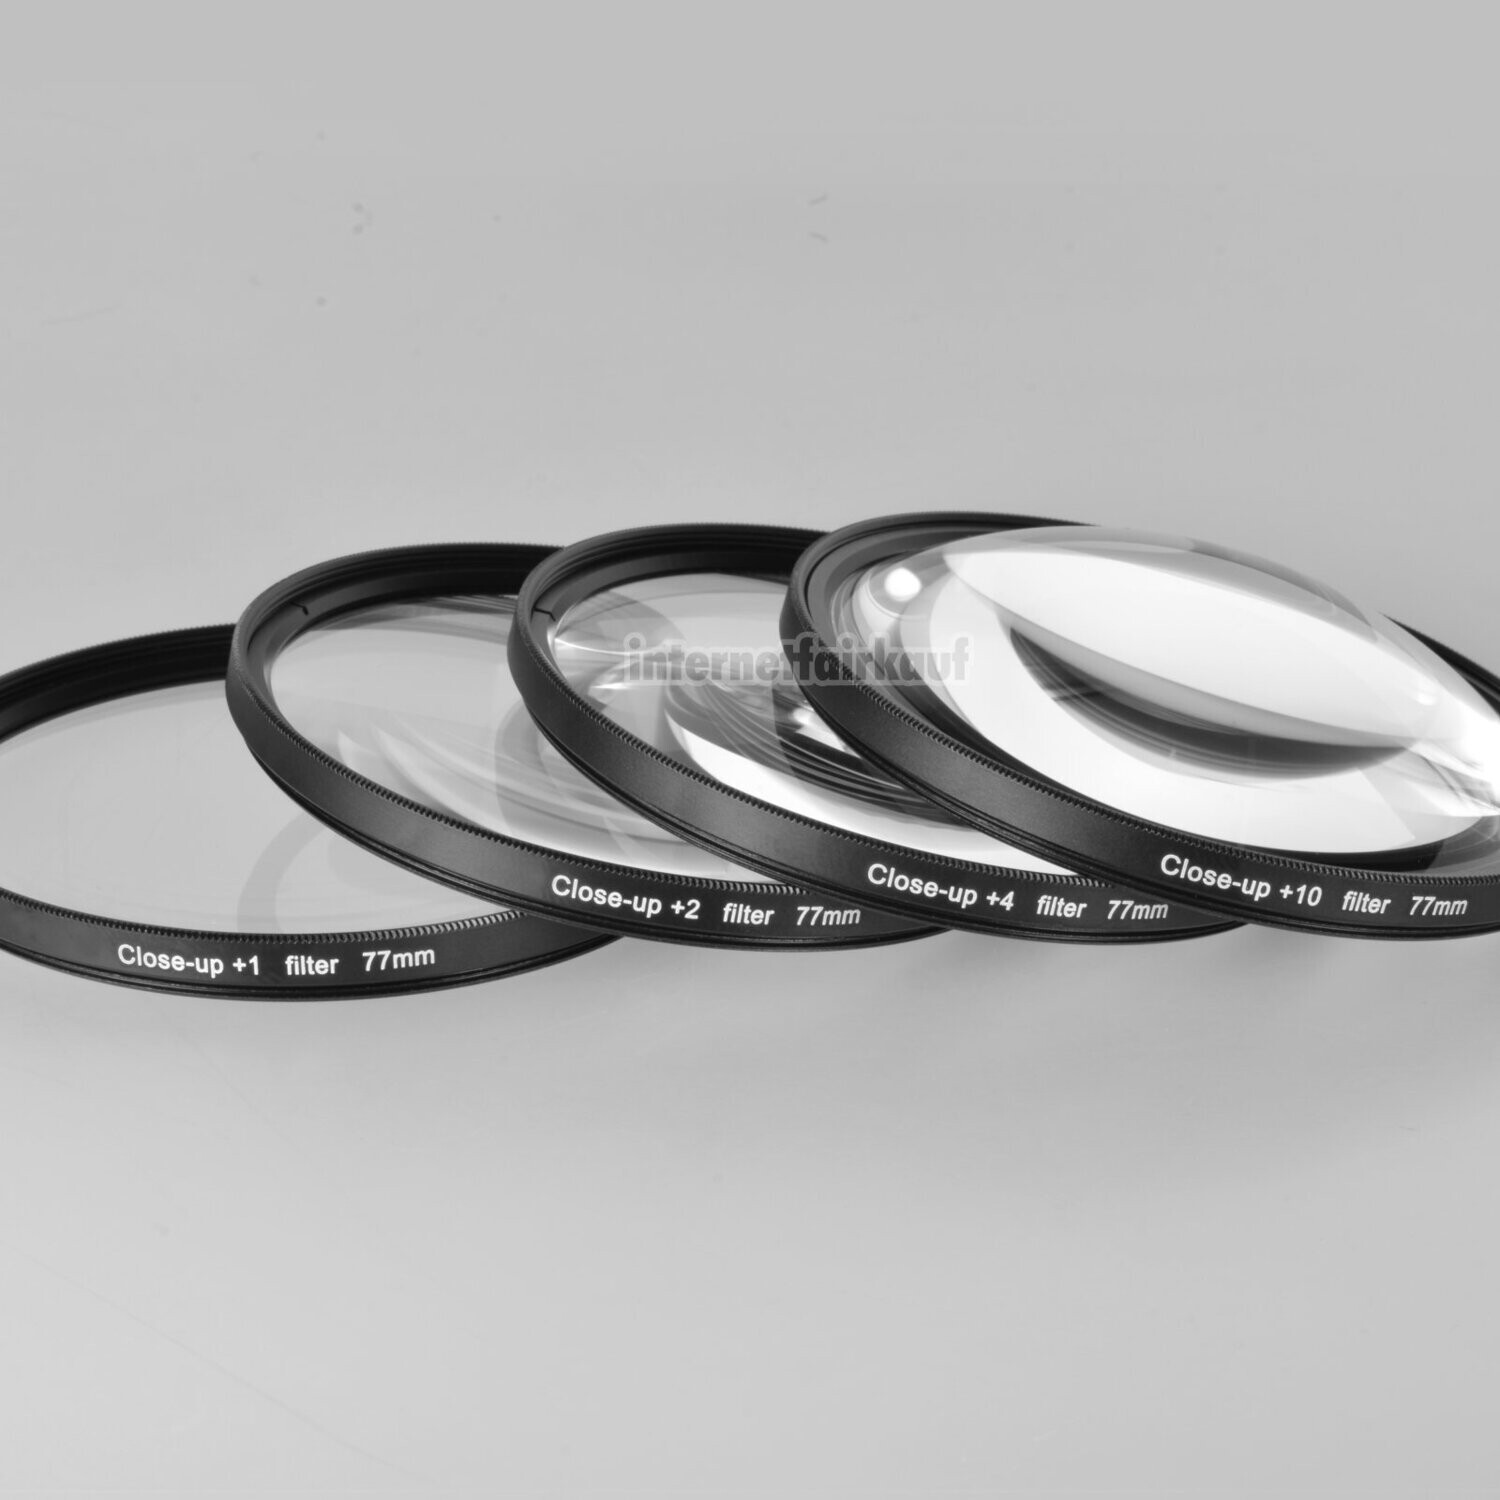 Close-Up Nahlinsen Set passend für Nikon Coolpix P1000